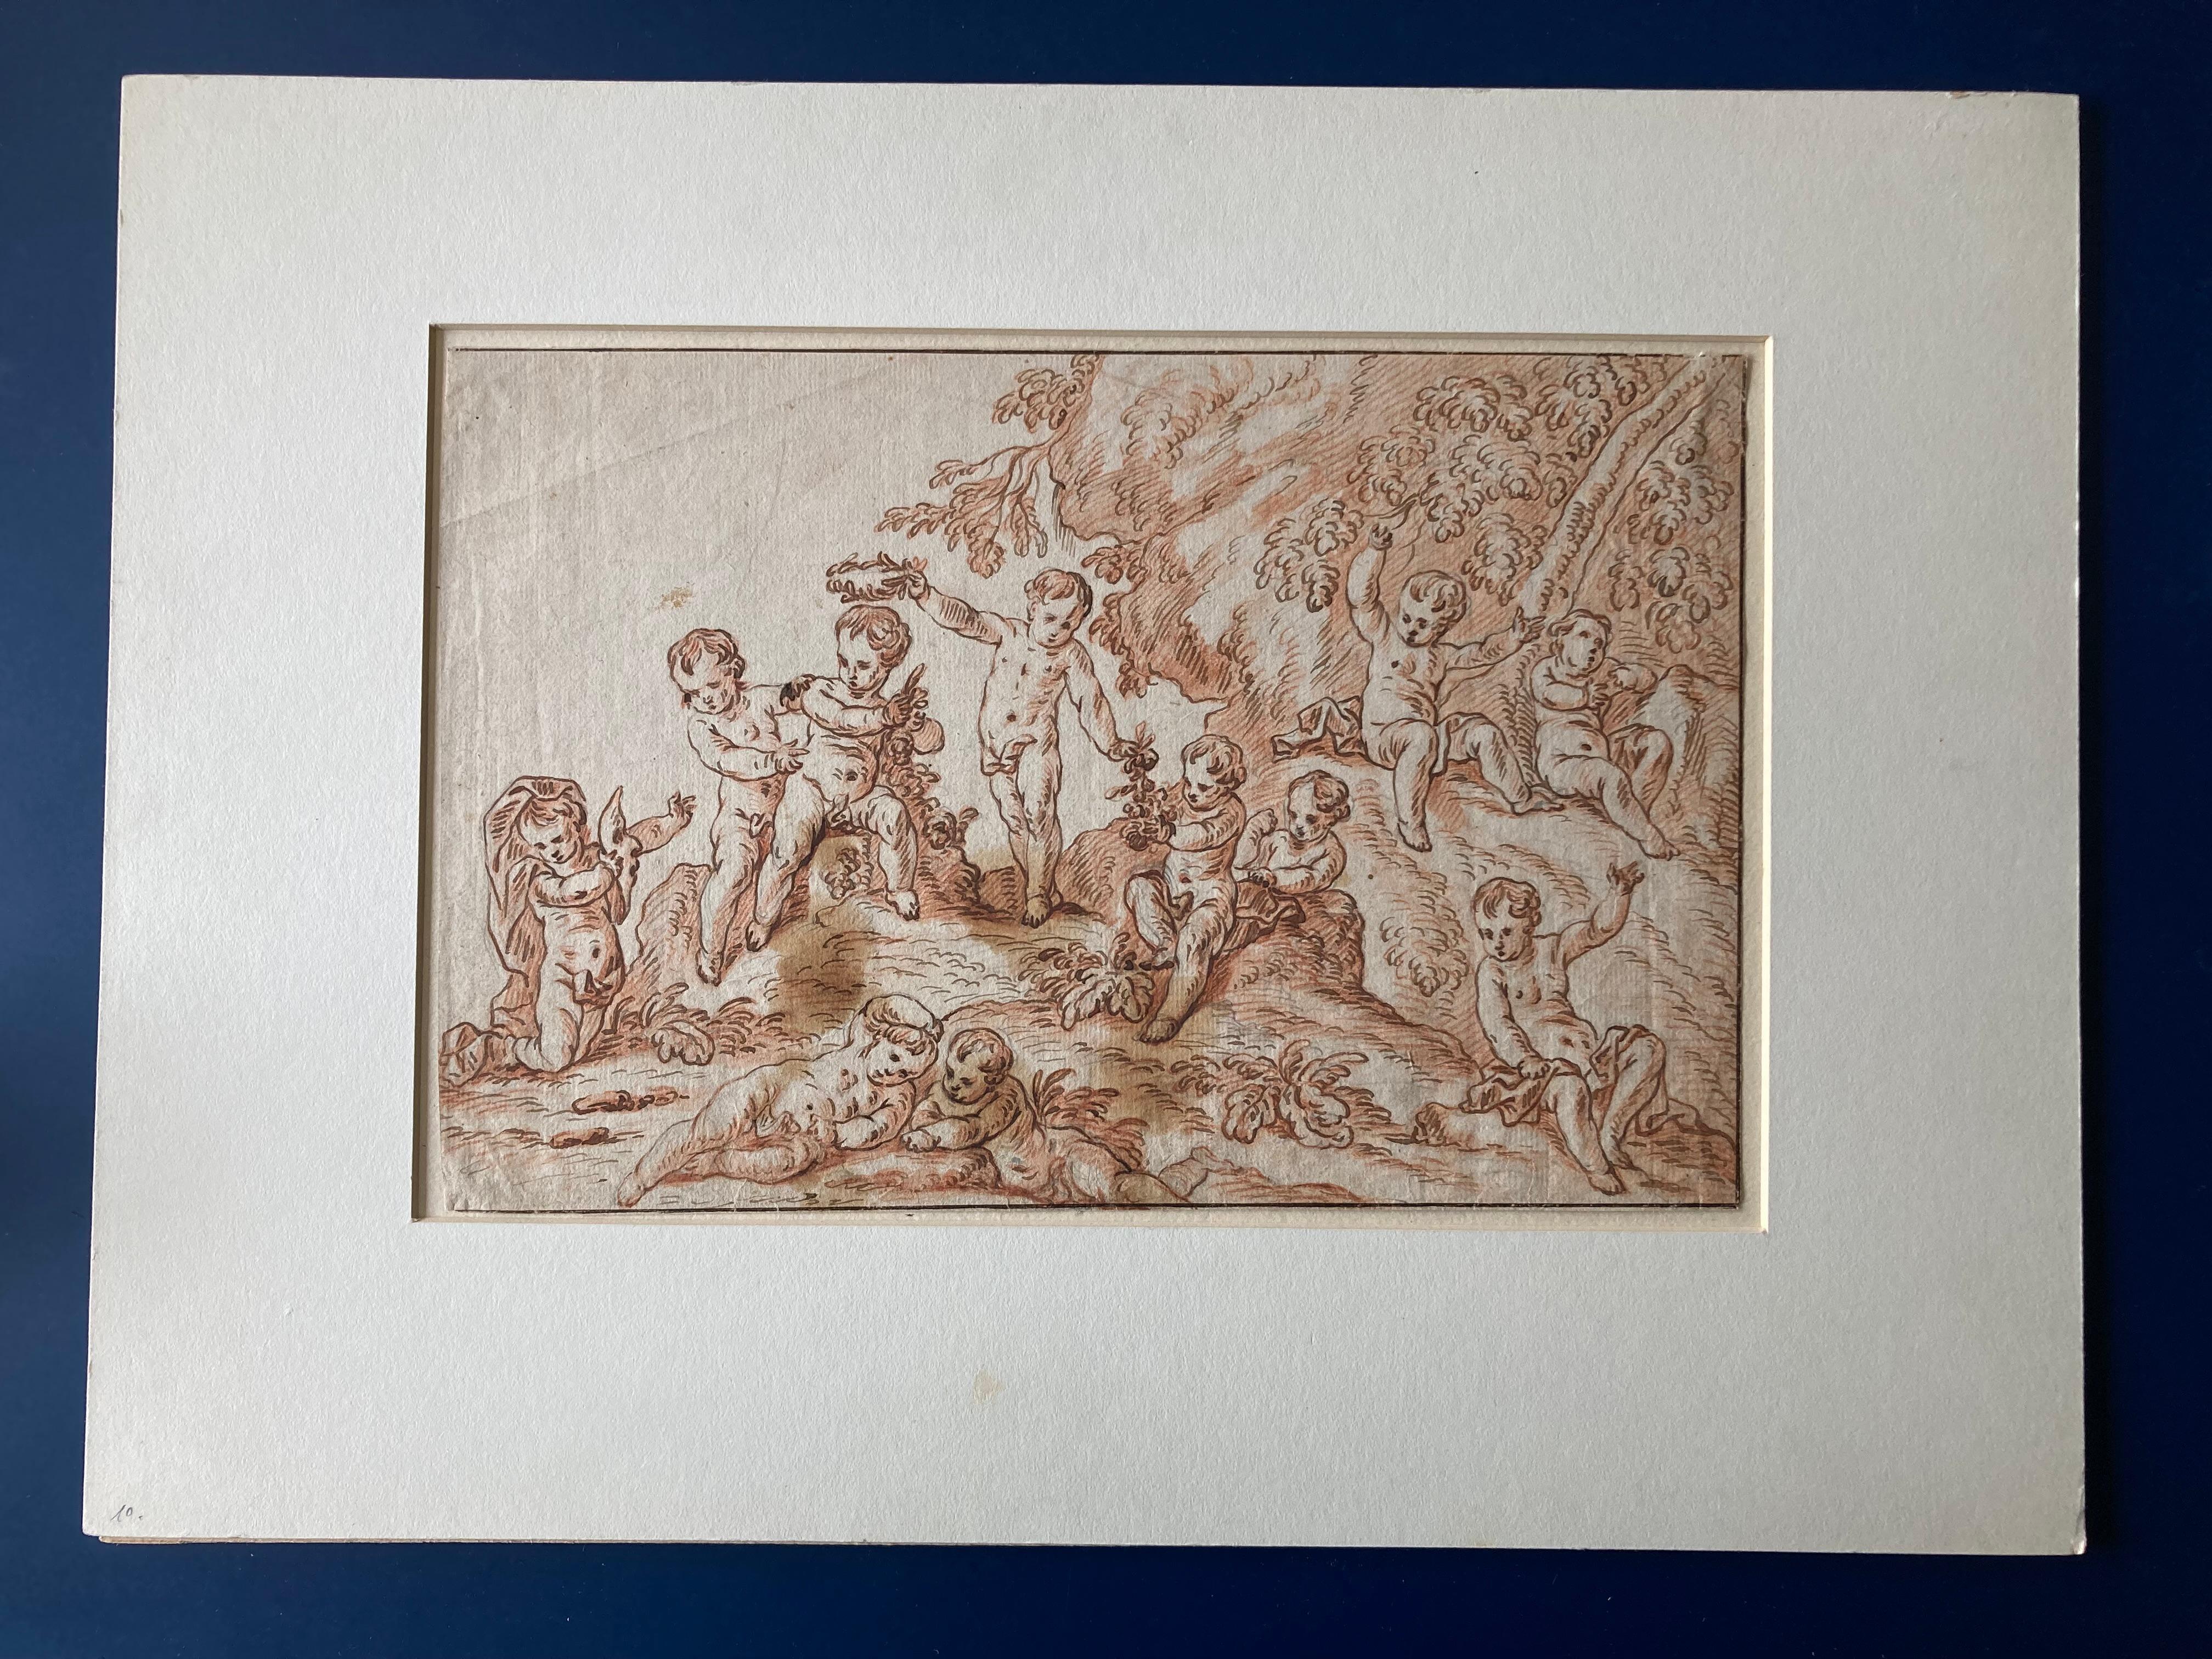 Pierre Berchet, Zeichnung von Putten, die in einer Landschaft spielen,
Maler dekorativer historischer Themen; ausgebildet bei La Fosse; arbeitete in Frankreich und in den 1690er Jahren in Großbritannien; schuf das Deckengemälde für die Kapelle des